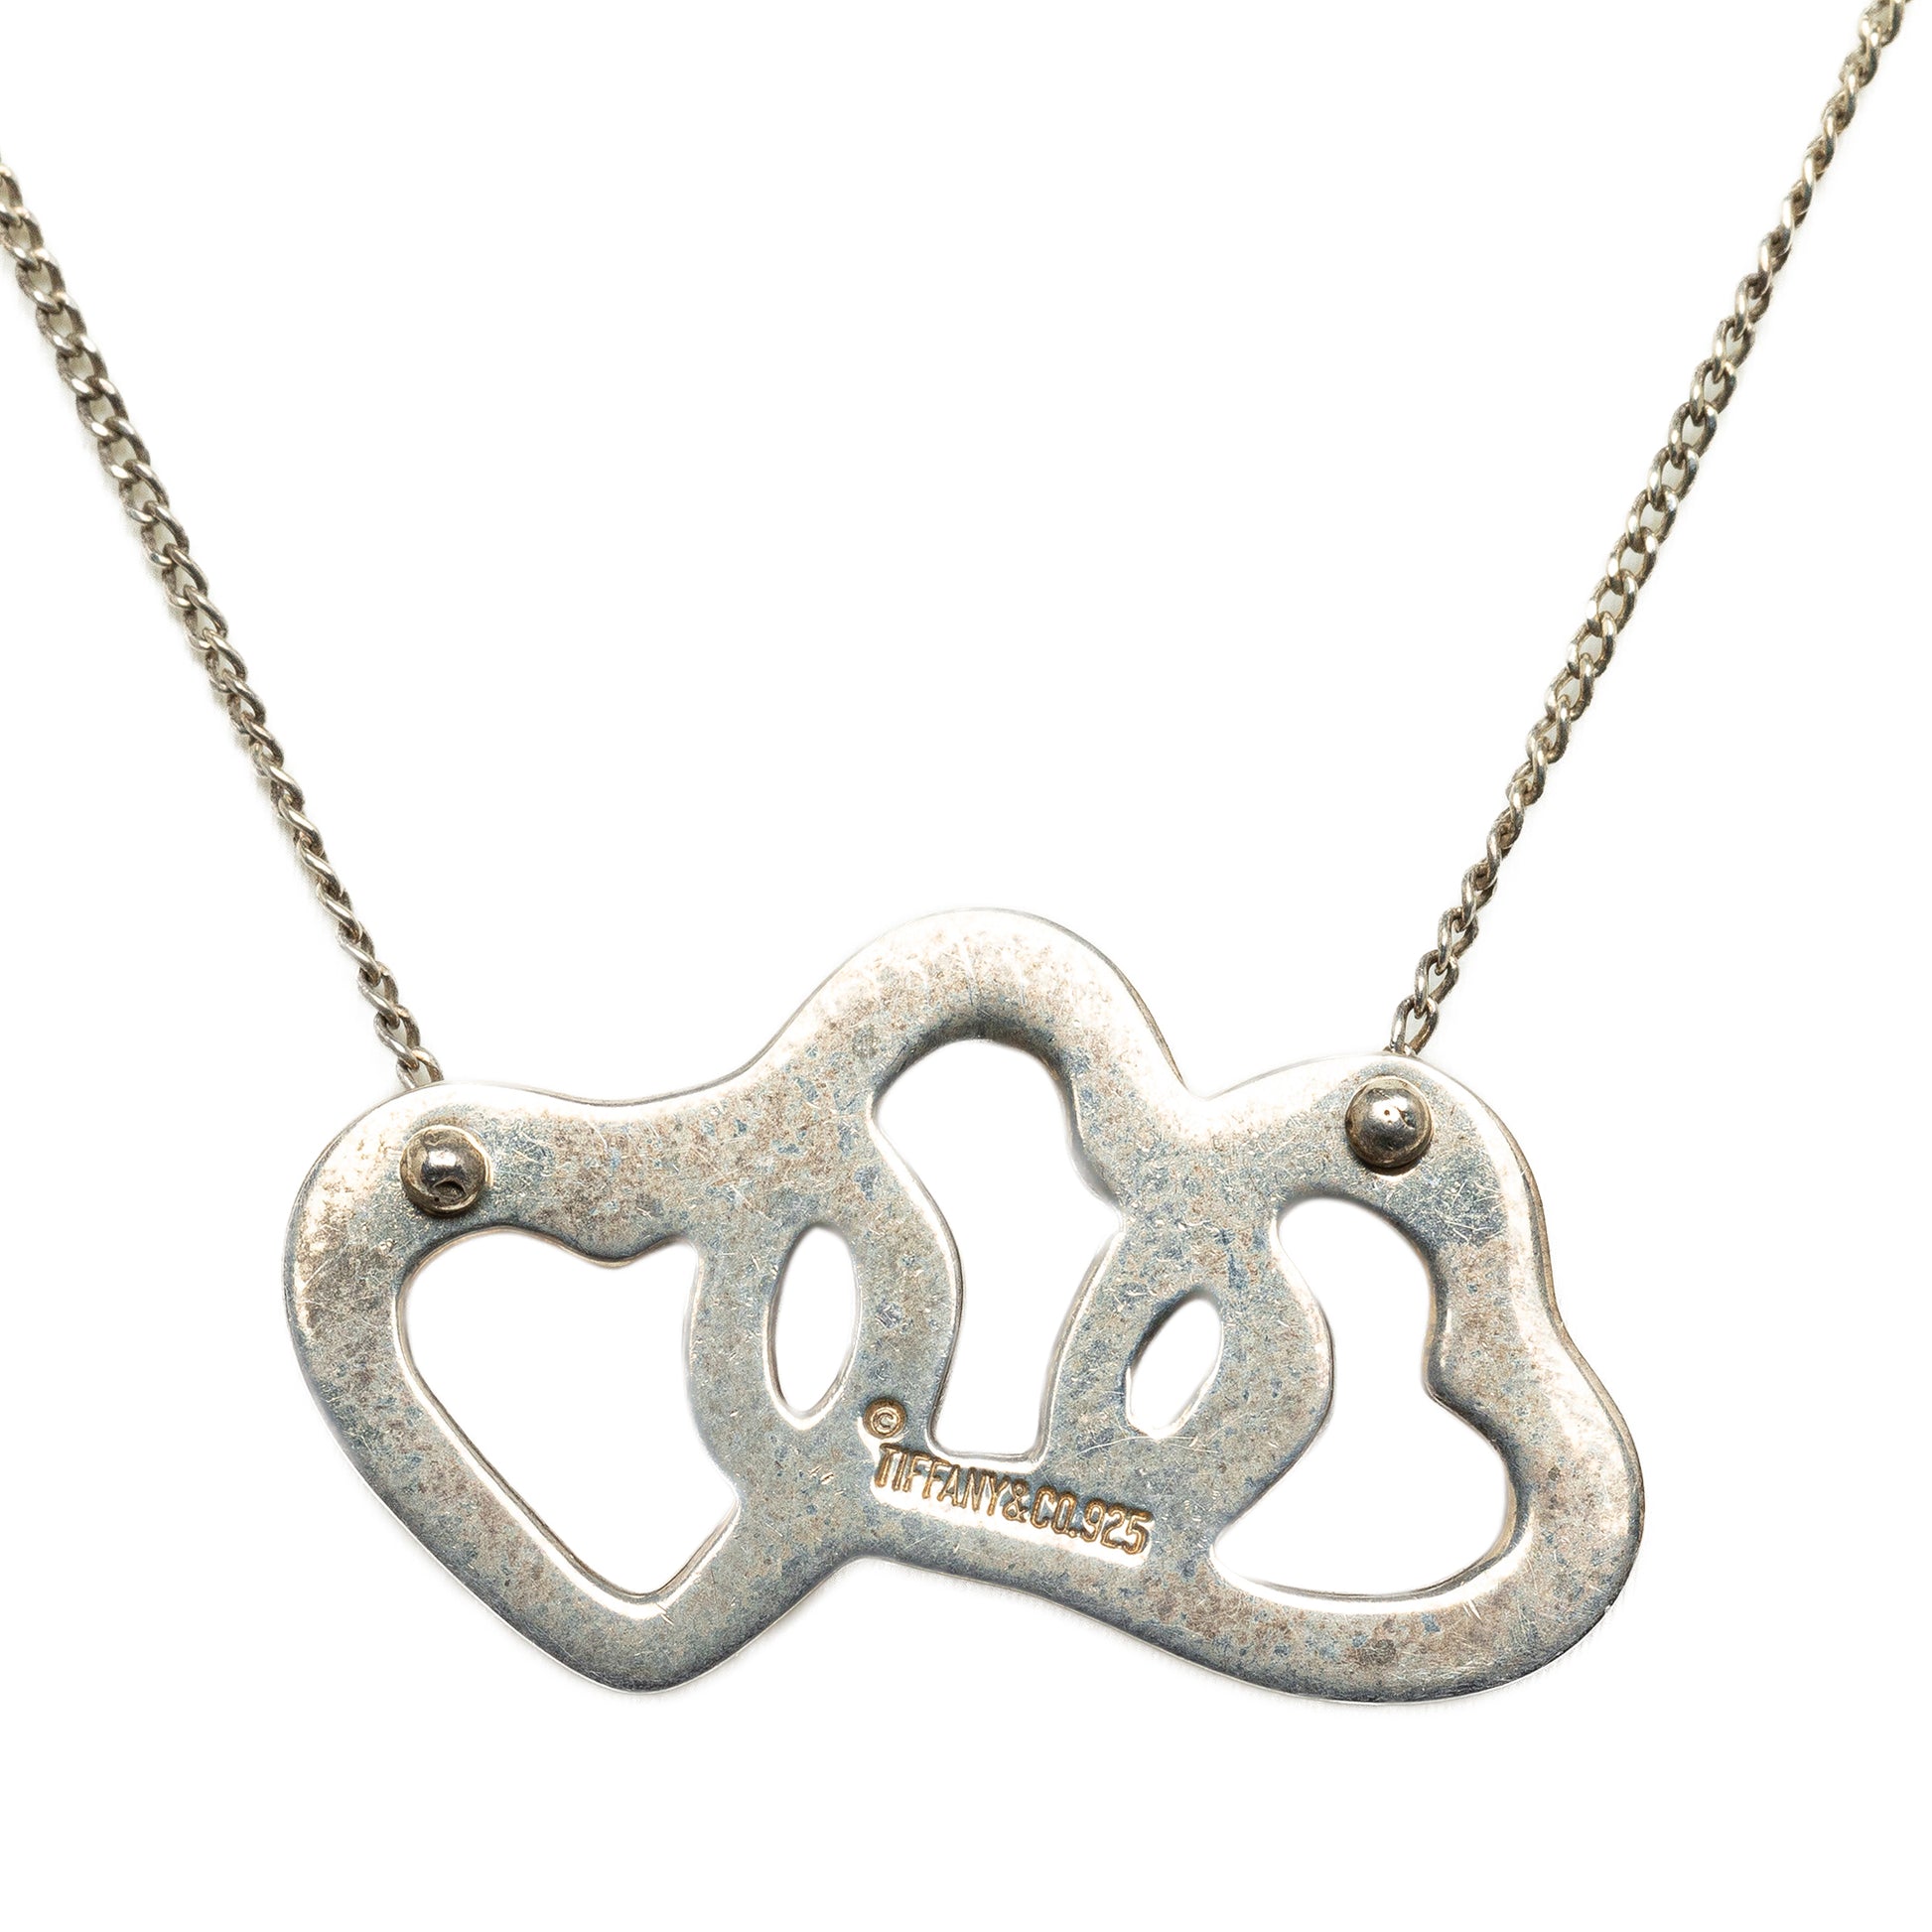 Triple Open Heart Pendant Necklace Silver - Gaby Paris